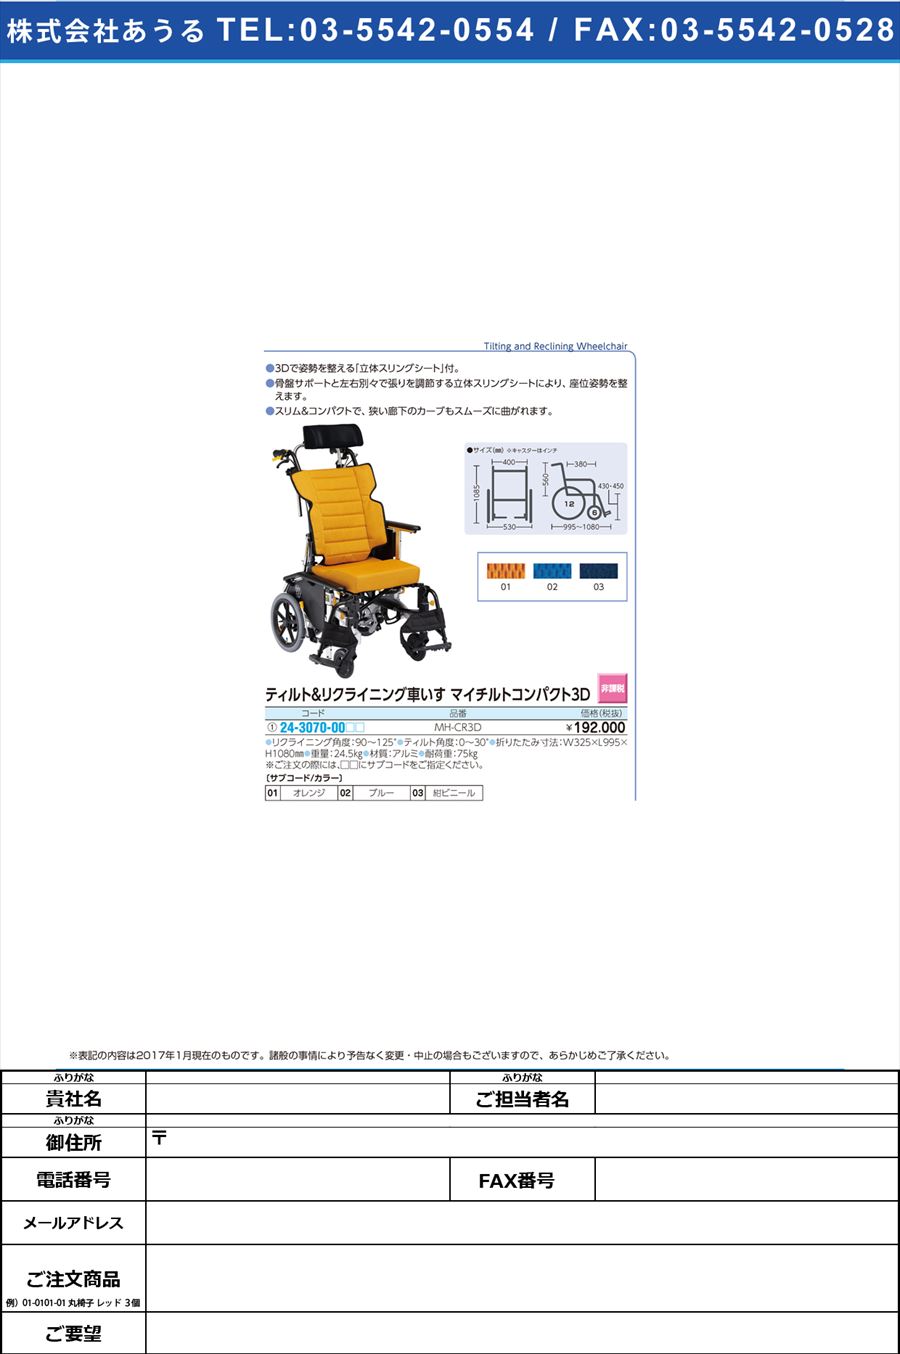 (24-3070-00)車いす マイチルトコンパクト３Ｄ ｸﾙﾏｲｽﾏｲﾁﾙﾄｺﾝﾊﾟｸﾄ3D MH-CR3D(24-3070-00)【1台単位】【2017年カタログ商品】